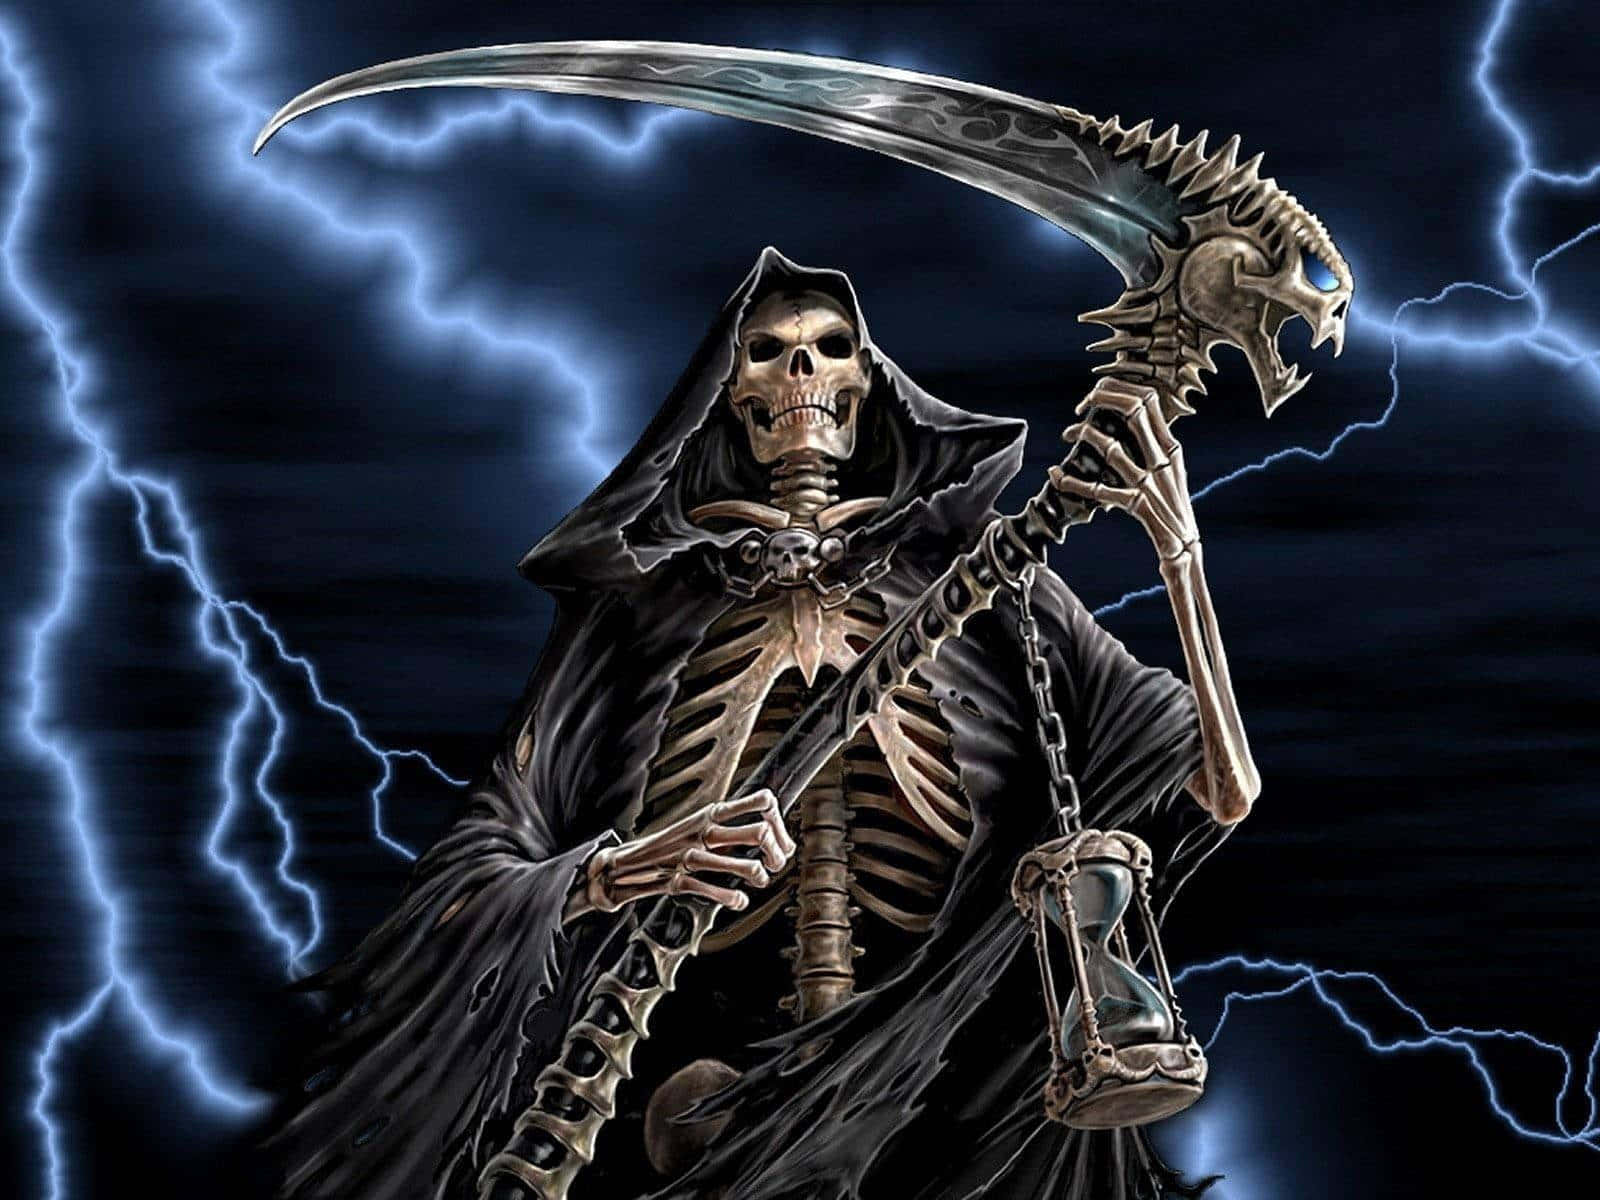 Billedeaf Grim Reaper I Størrelsen 1600 X 1200 Til Computer Eller Mobilbaggrund.